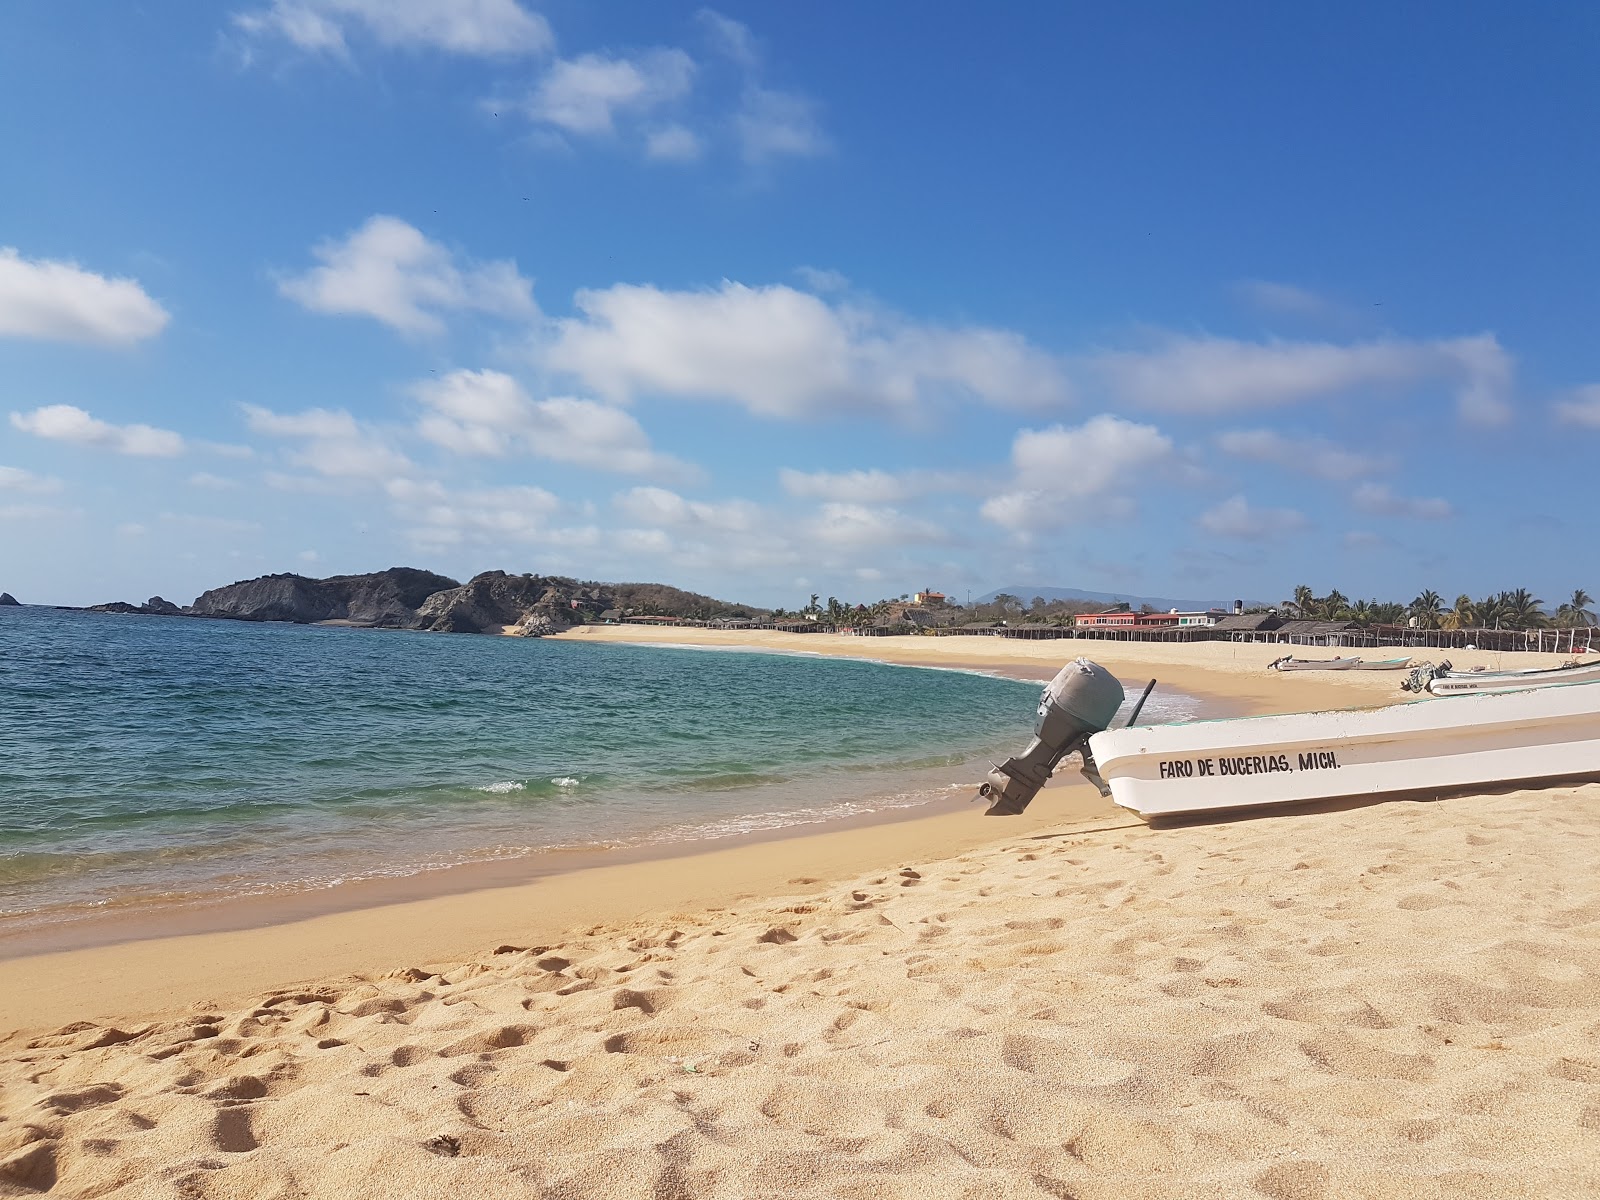 Fotografie cu Playa el Faro - locul popular printre cunoscătorii de relaxare